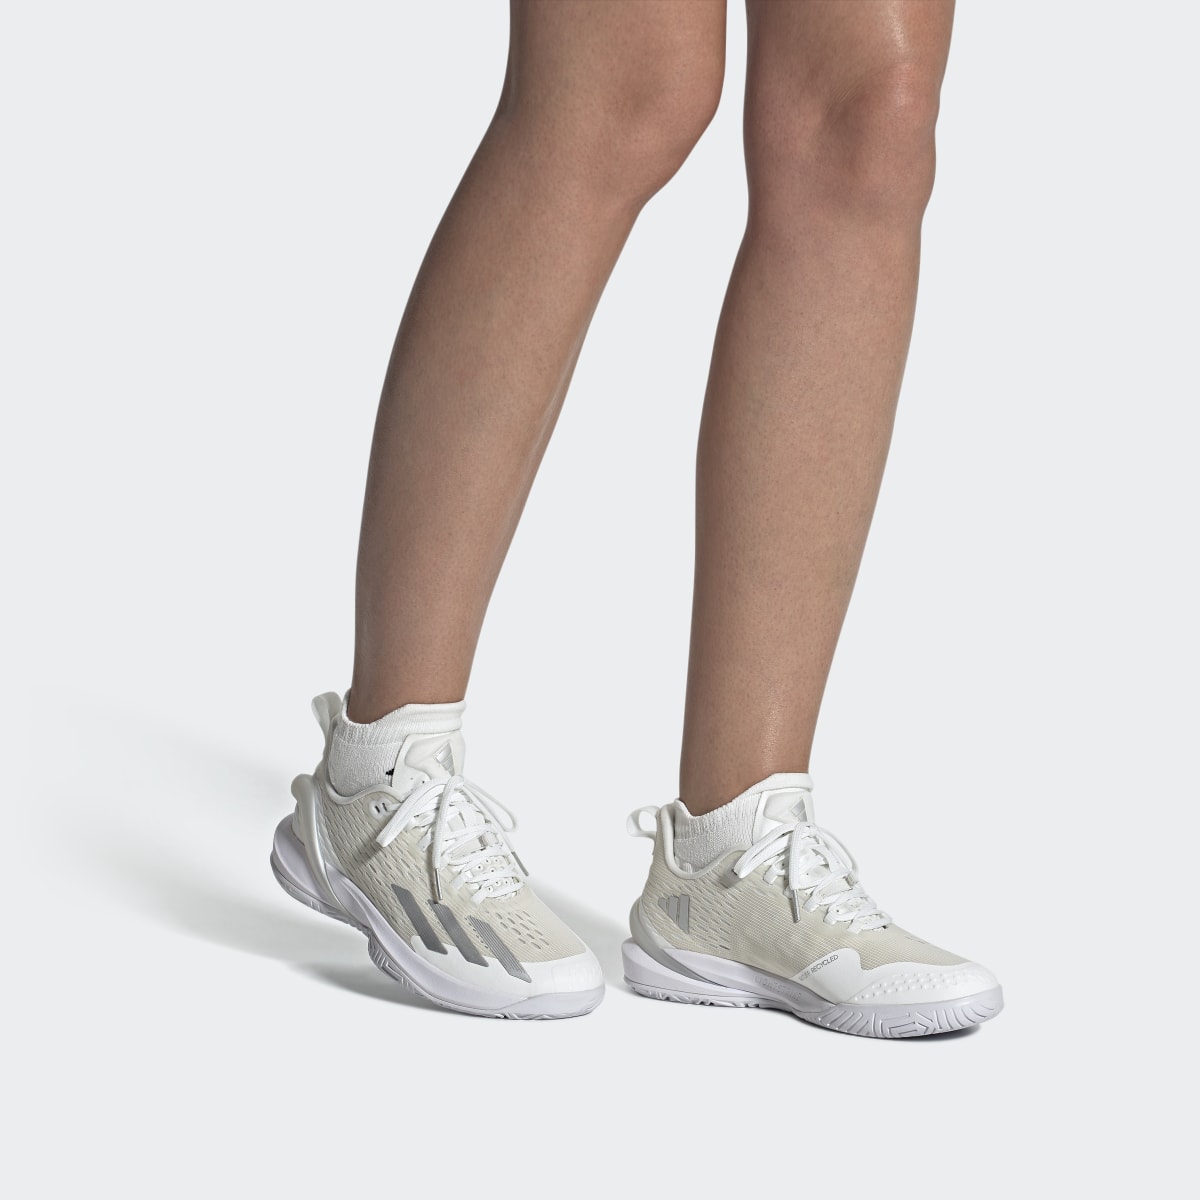 Adidas adizero Cybersonic Tennis Shoes. 5